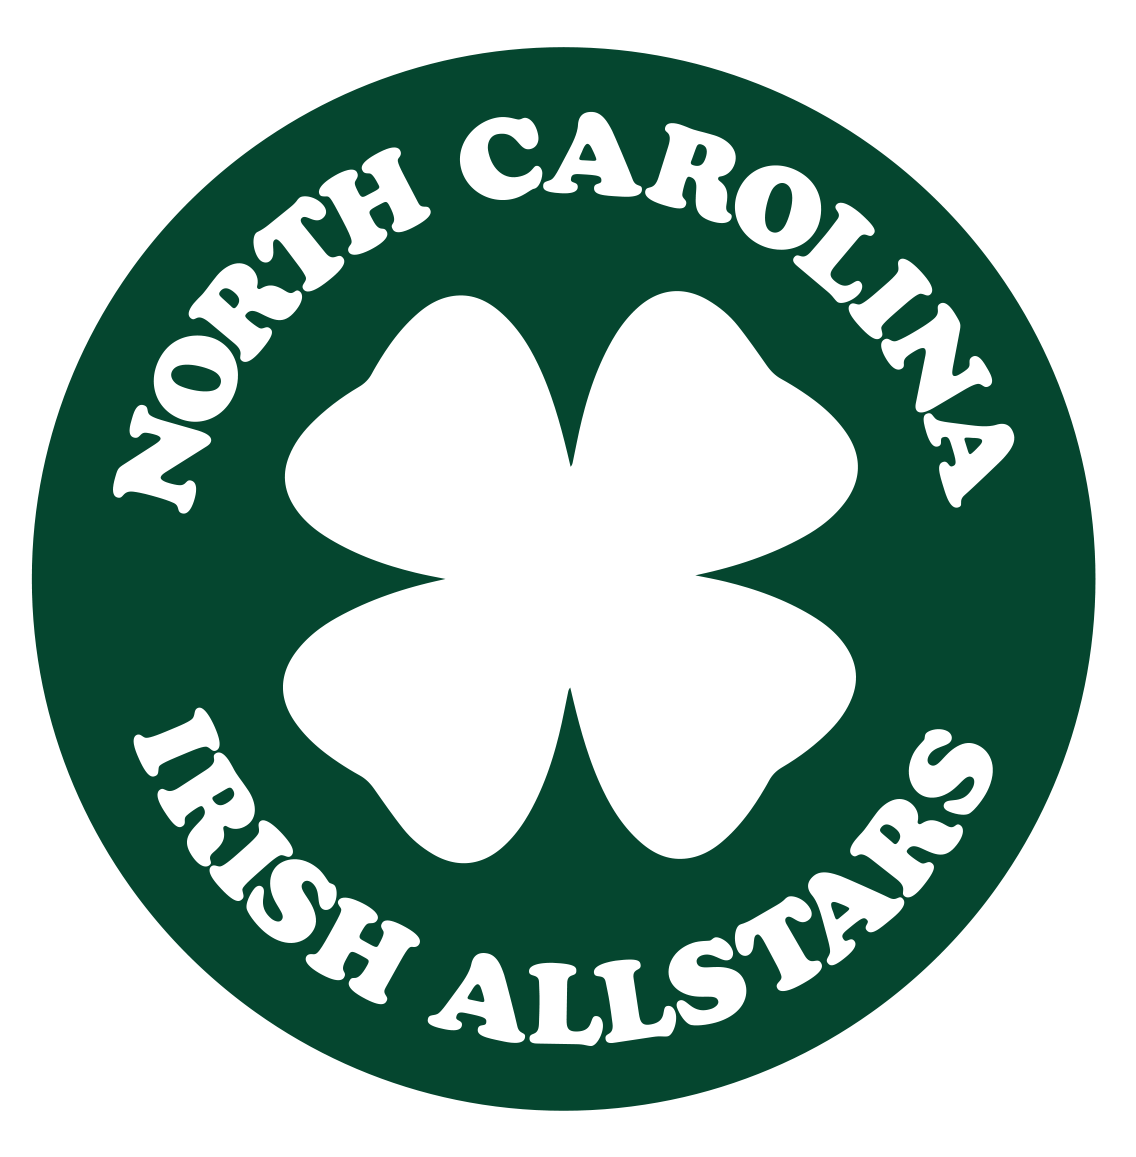 North Carolina Irish Allstars